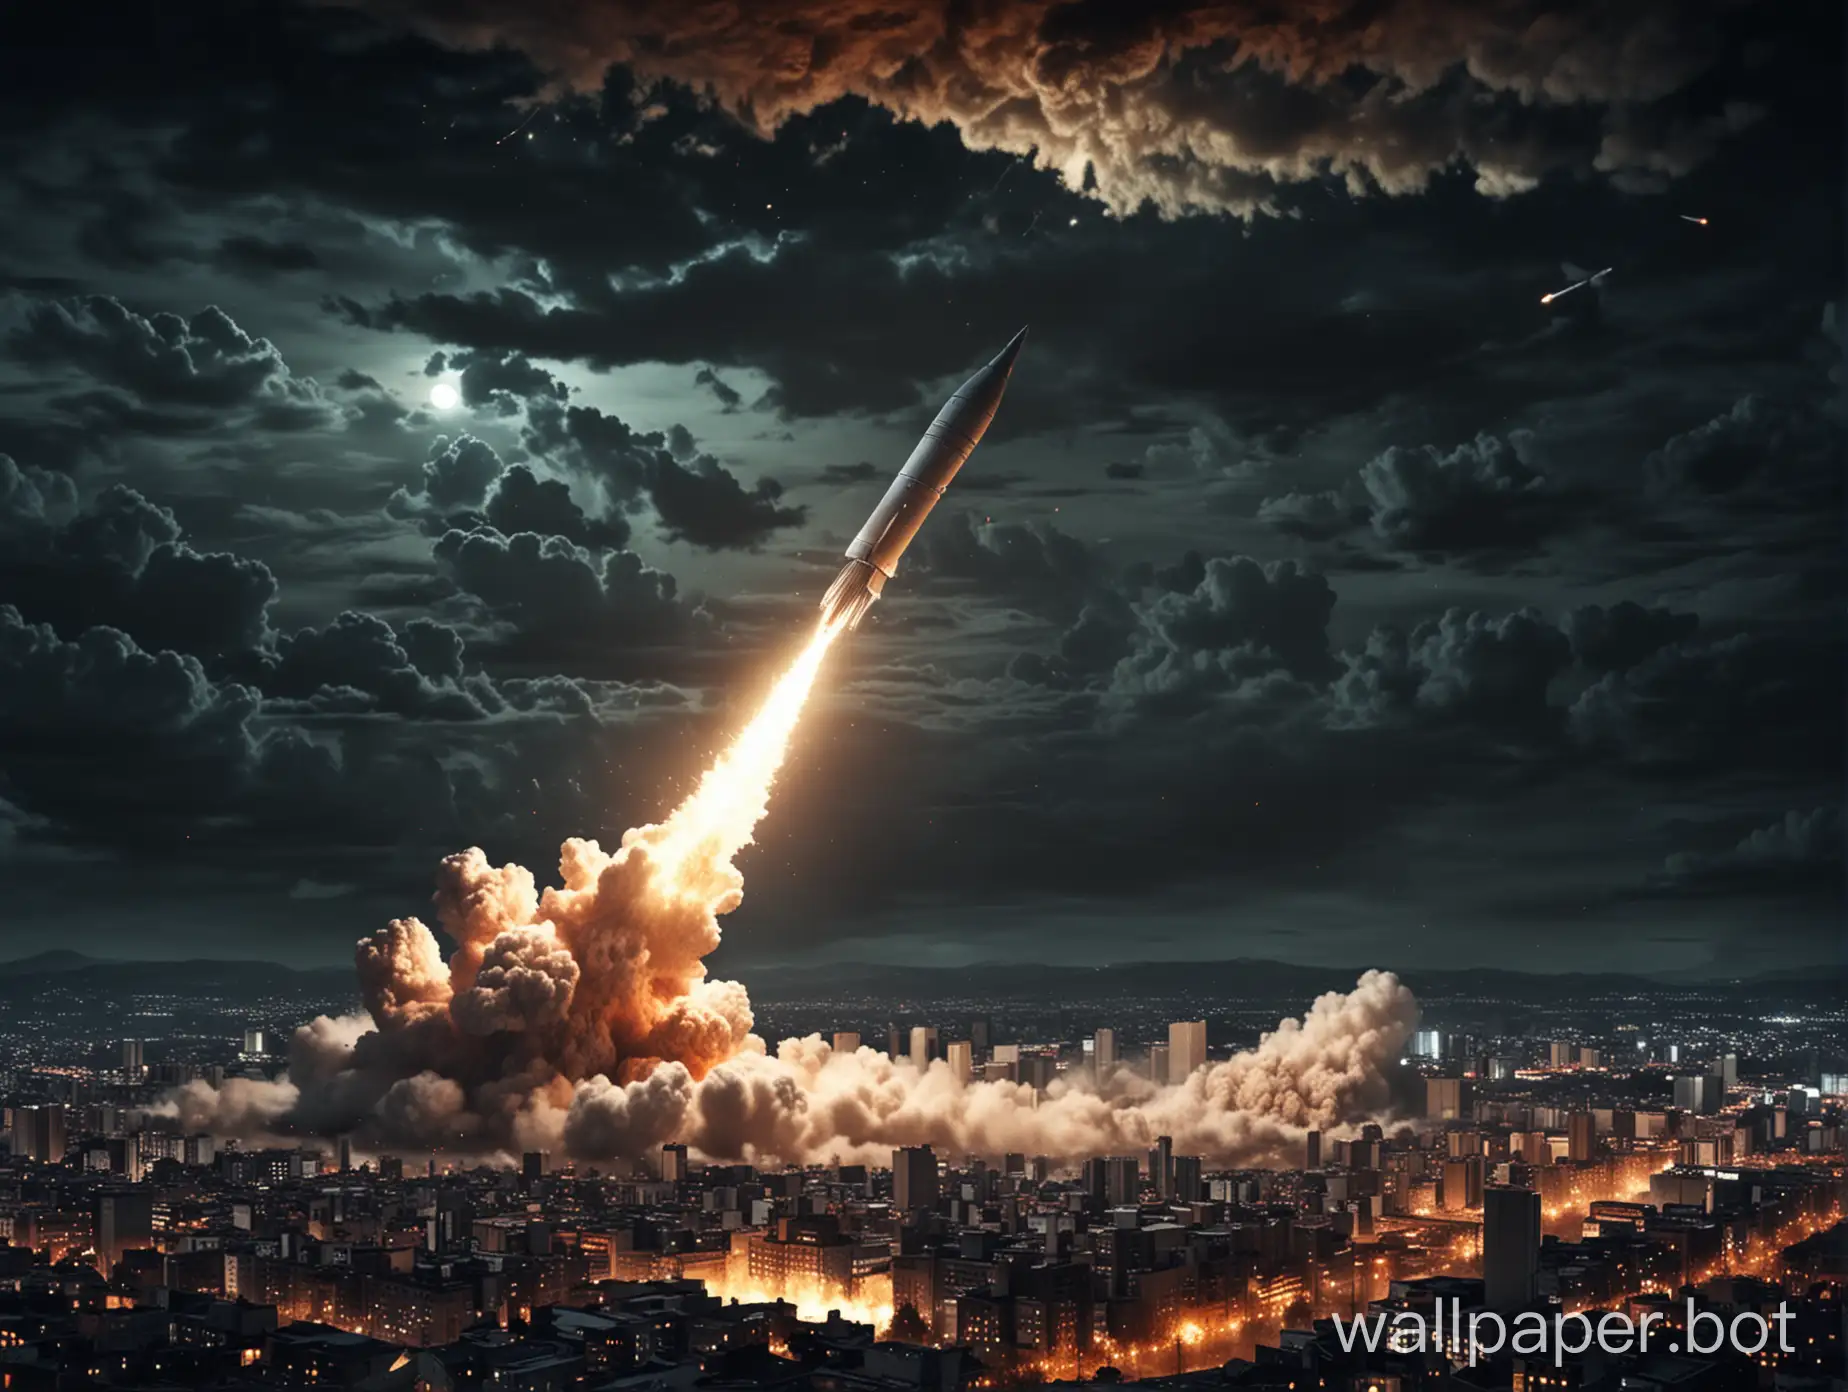 ядерная ракета летит над ночным городом, ядерные взрывы на фоне